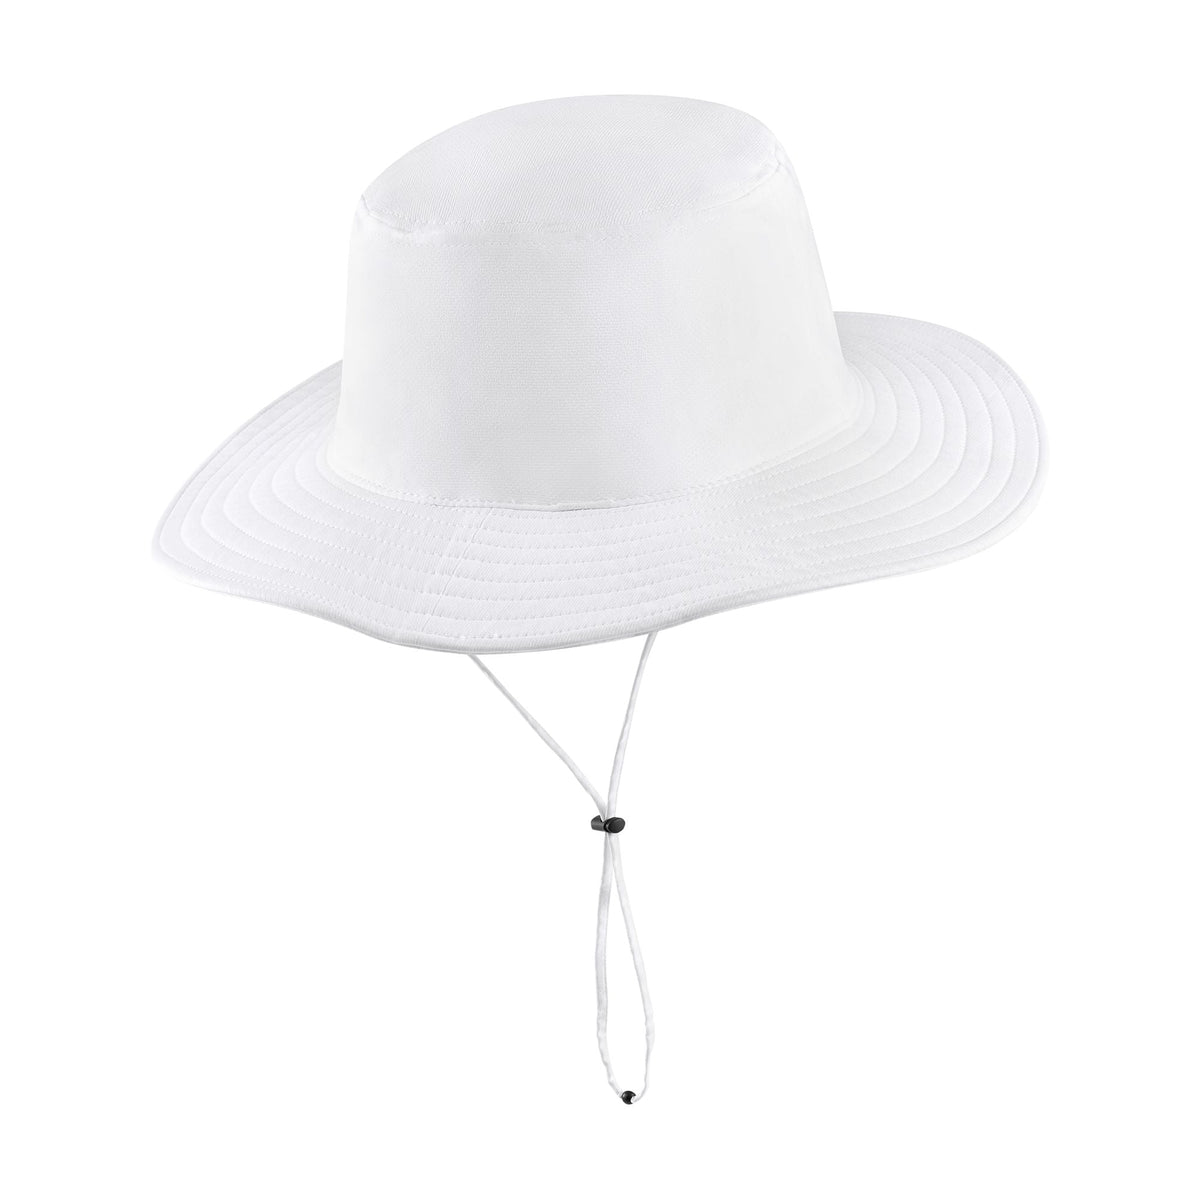 Nike Dri-FIT UV Golf Bucket Hat